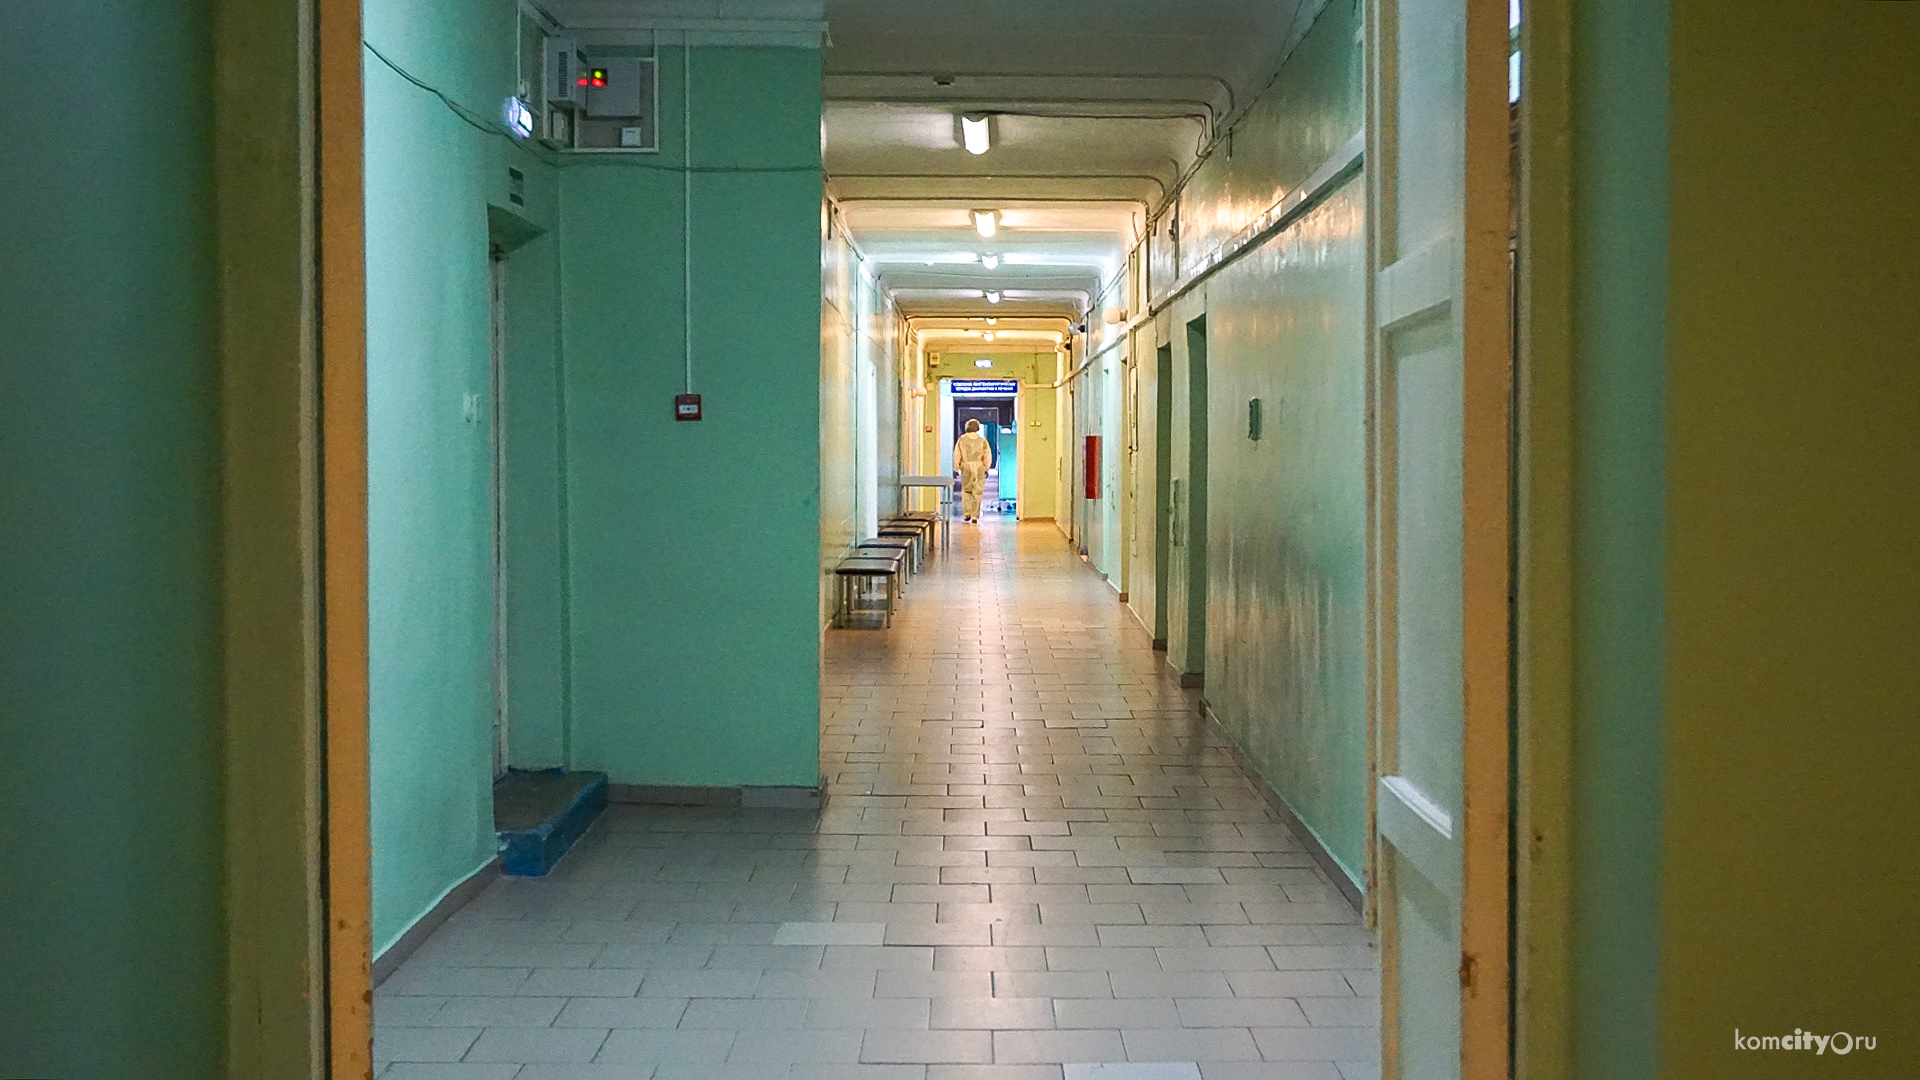 Данных всё меньше — за сутки в городские госпитали Комсомольска-на-Амуре поступили 50 человек, данных по поступившим во вторую больницу нет